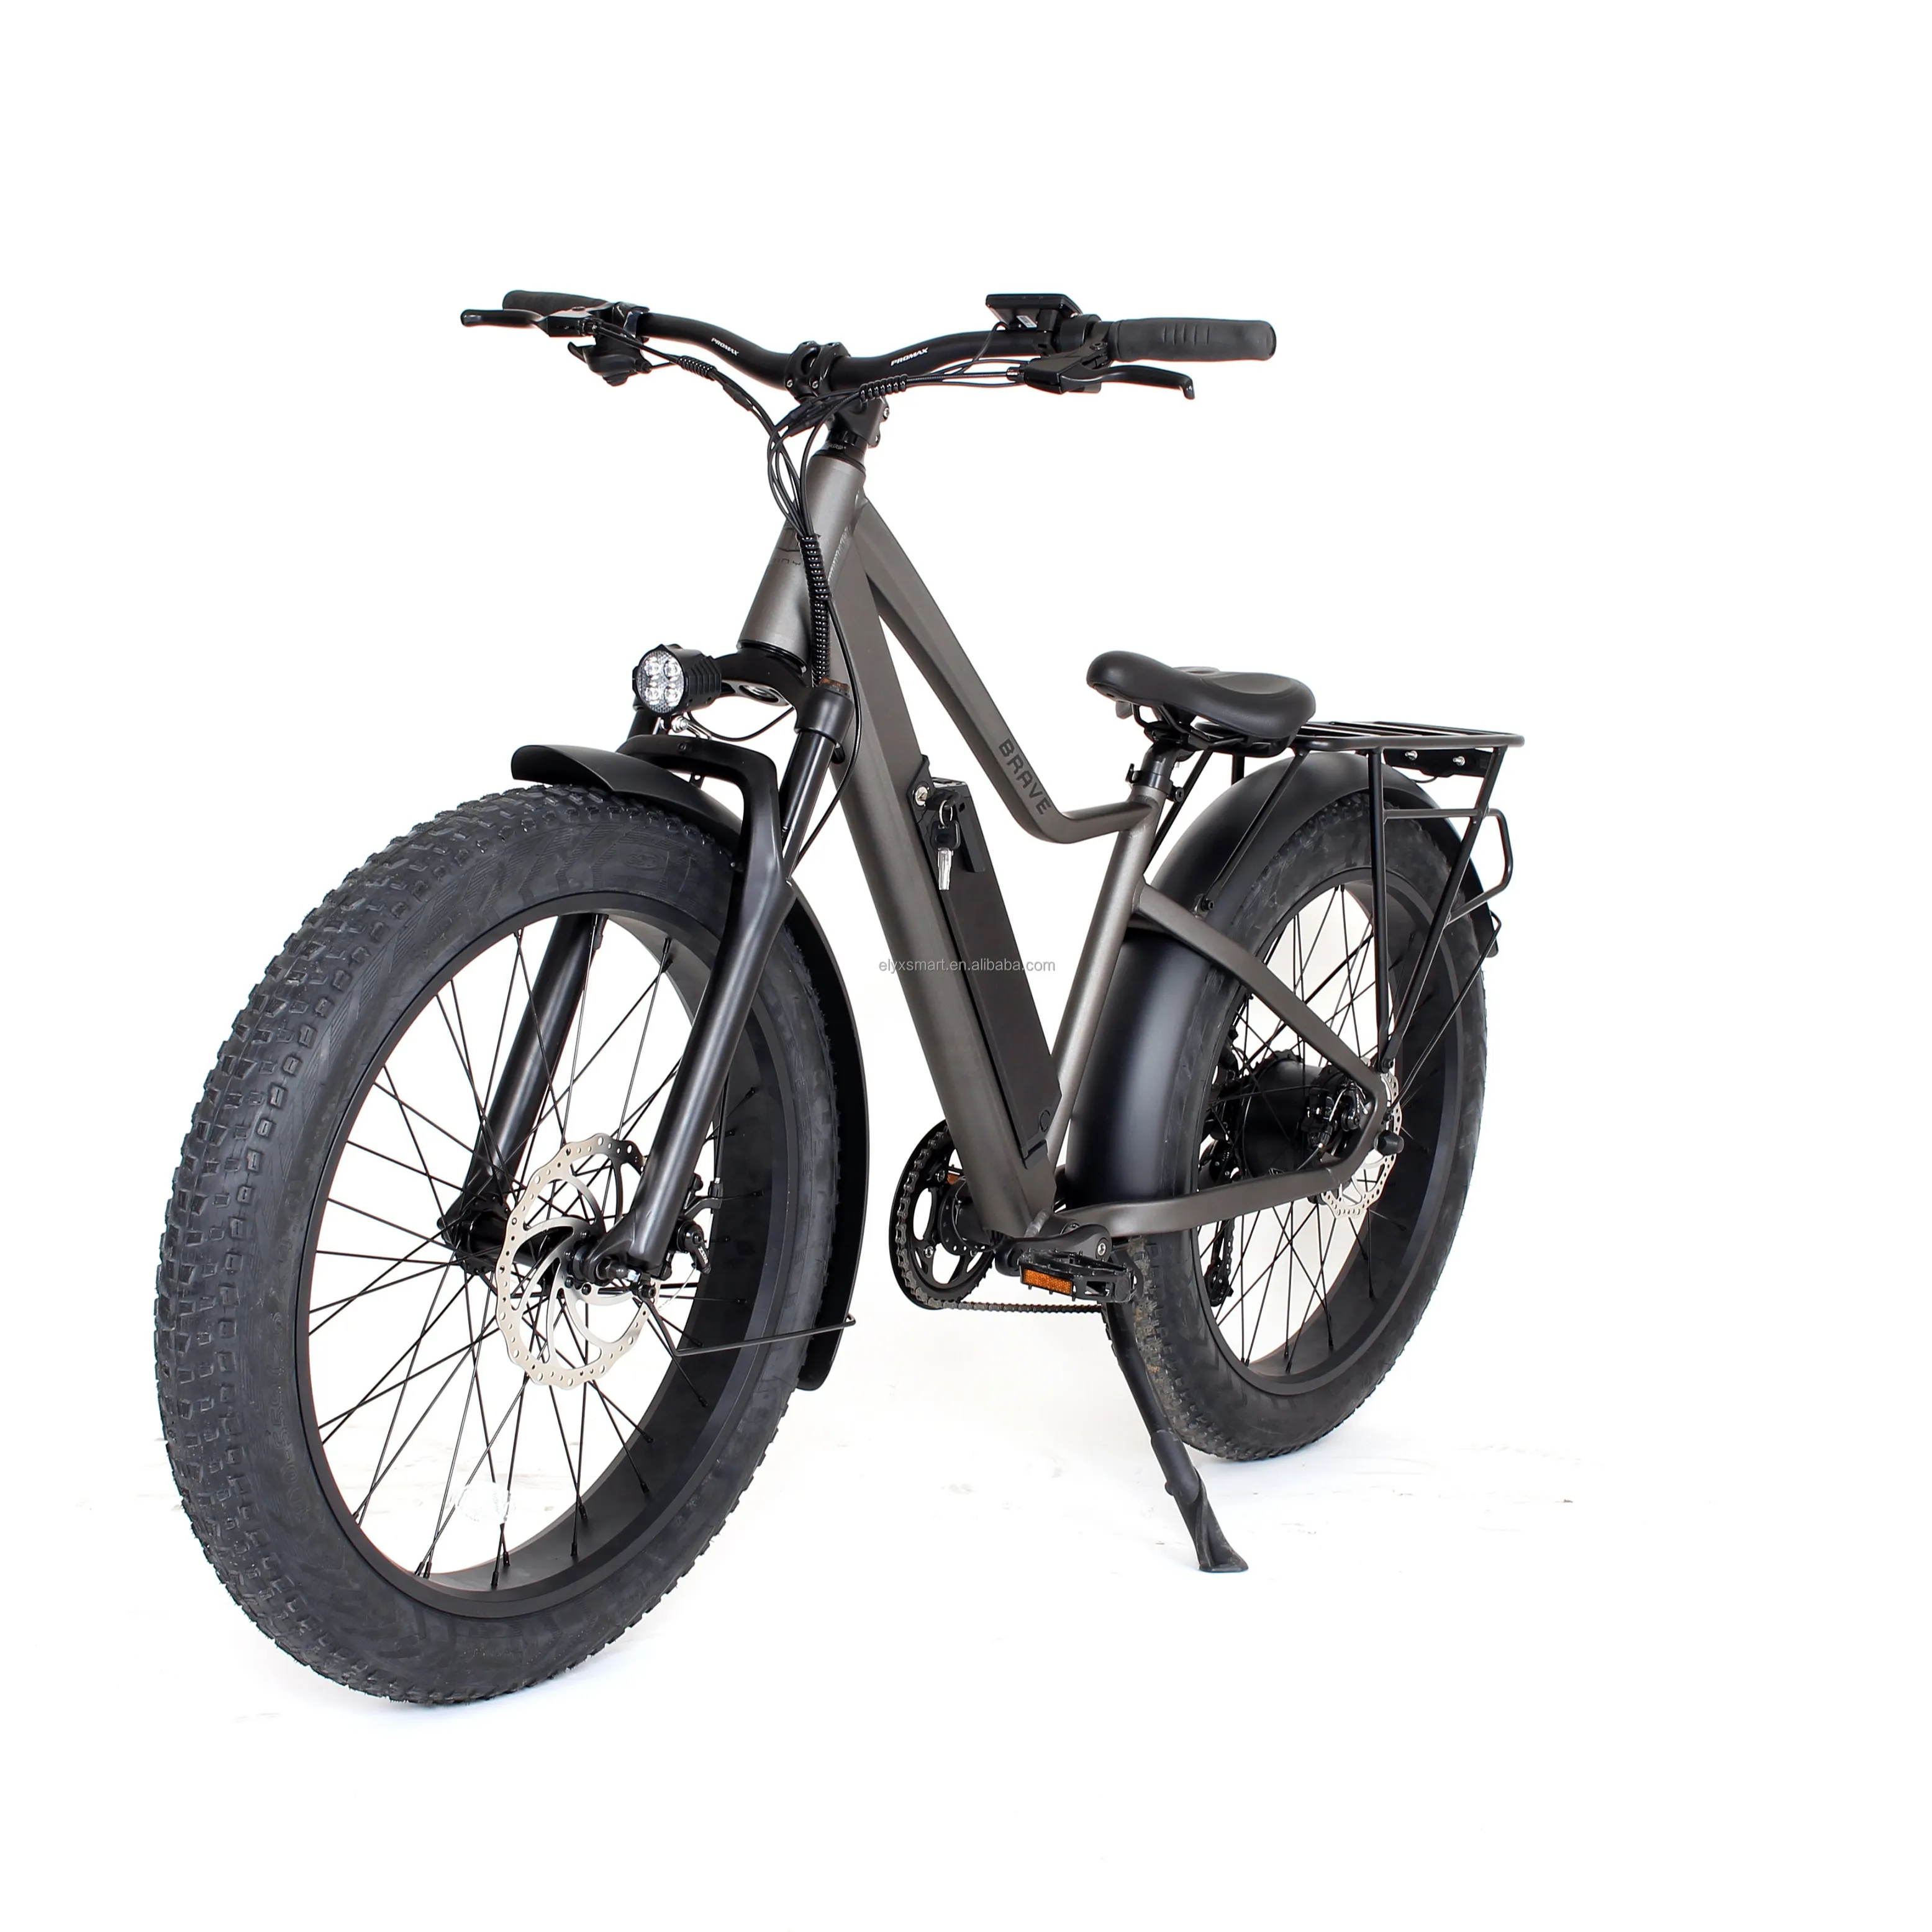 Elyxon prezzo all'ingrosso adulti Hybride Bike 7 velocità Beach Sand 500W Fat Bike 26 pollici bicicletta elettrica mountain Bike per adulti